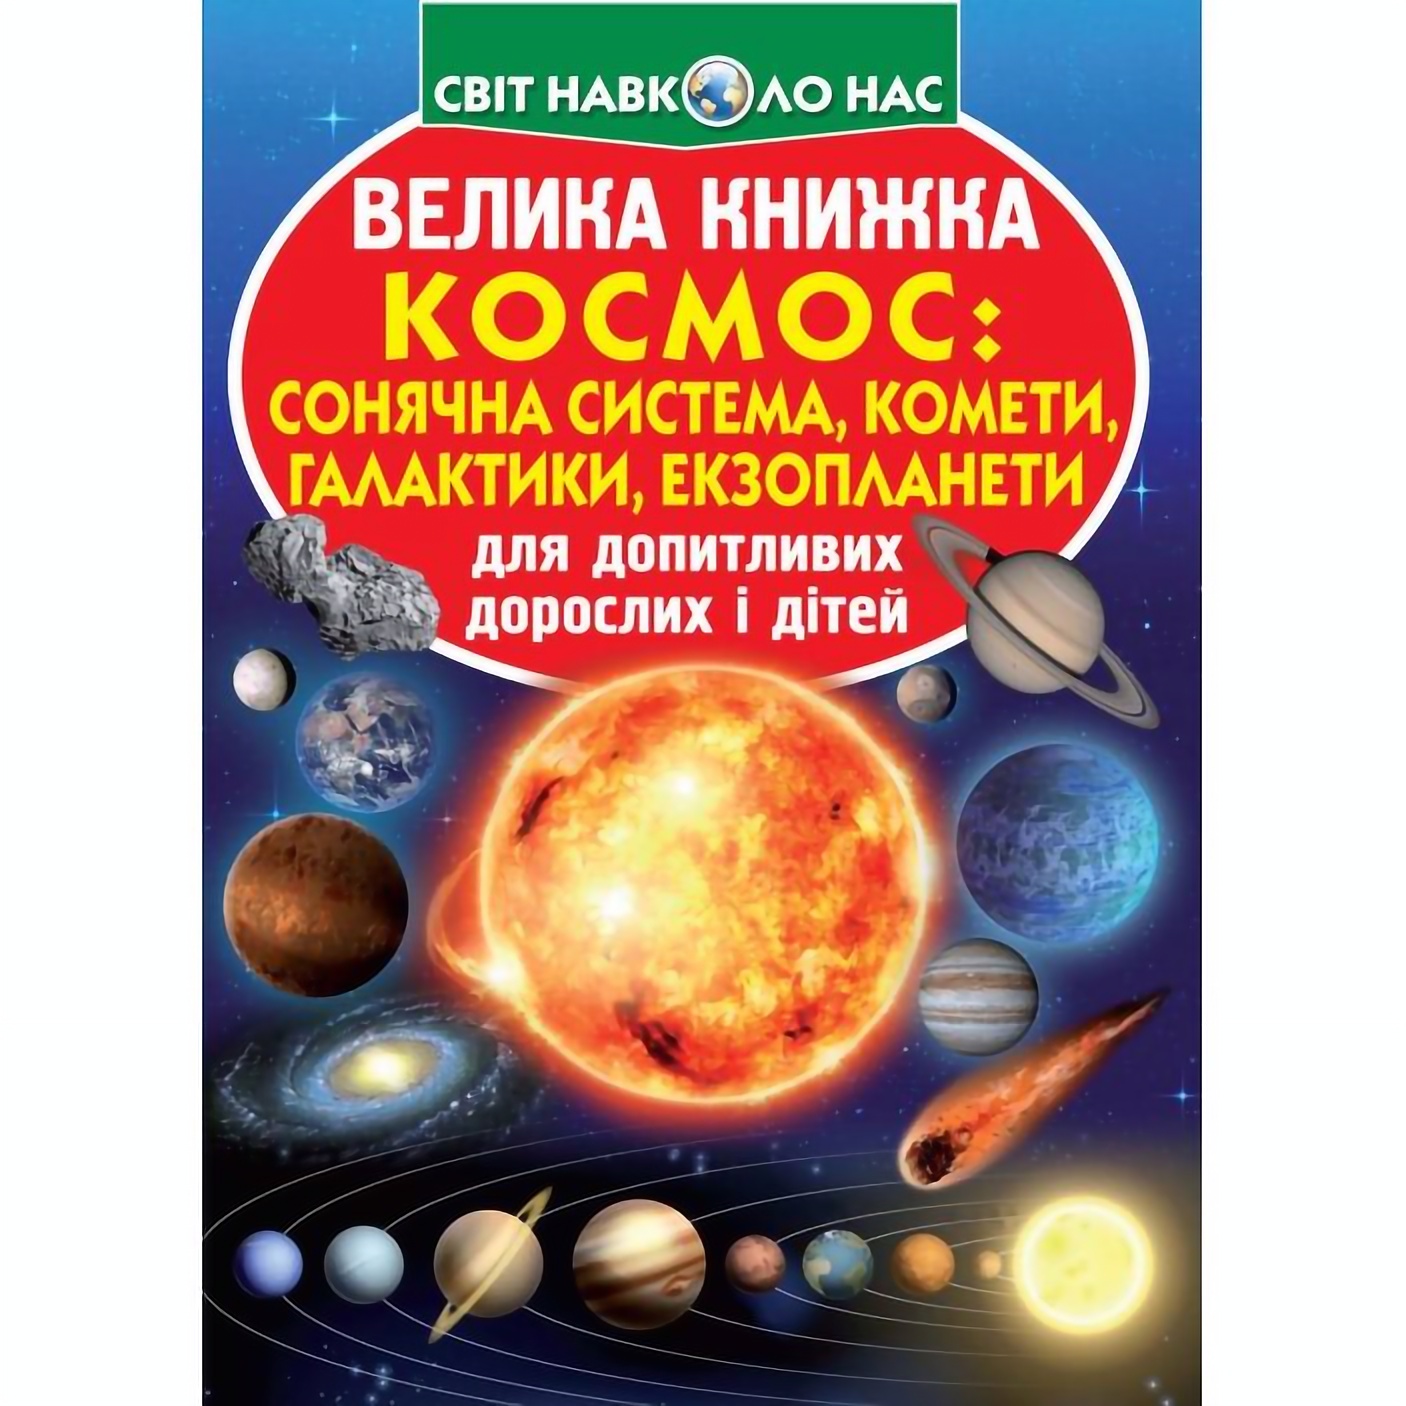 Большая книга Кристал Бук Космос: солнечная система, кометы, галактики, экзопланеты (F00019391) - фото 1